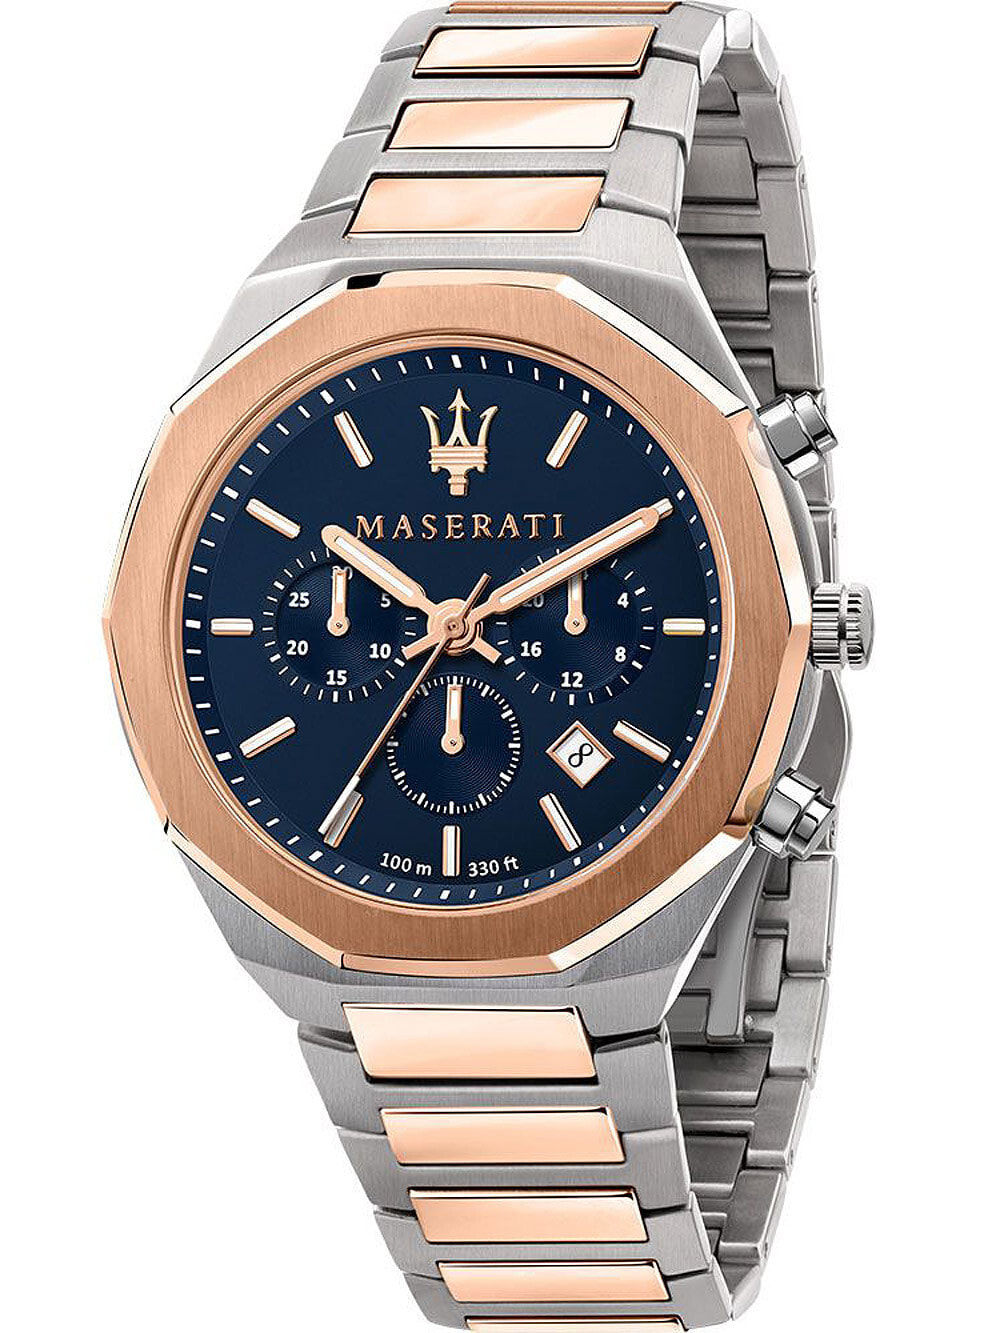 Мужские наручные часы с серебряным золотым браслетом Maserati R8873642002 Stile chrono 45mm 10ATM